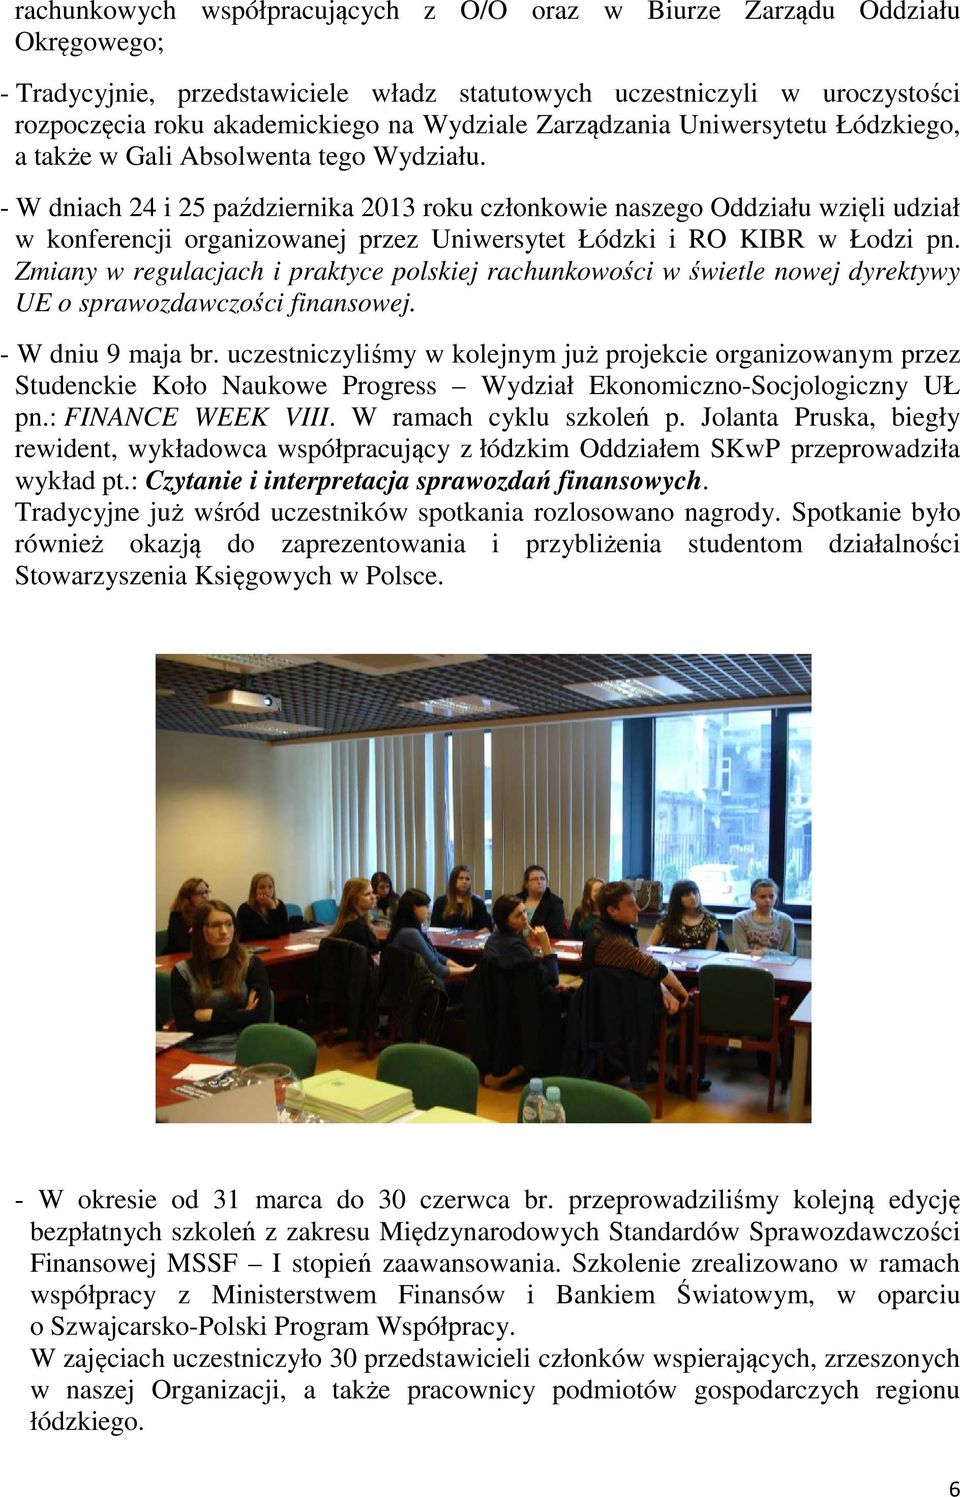 - W dniach 24 i 25 października 2013 roku członkowie naszego Oddziału wzięli udział w konferencji organizowanej przez Uniwersytet Łódzki i RO KIBR w Łodzi pn.